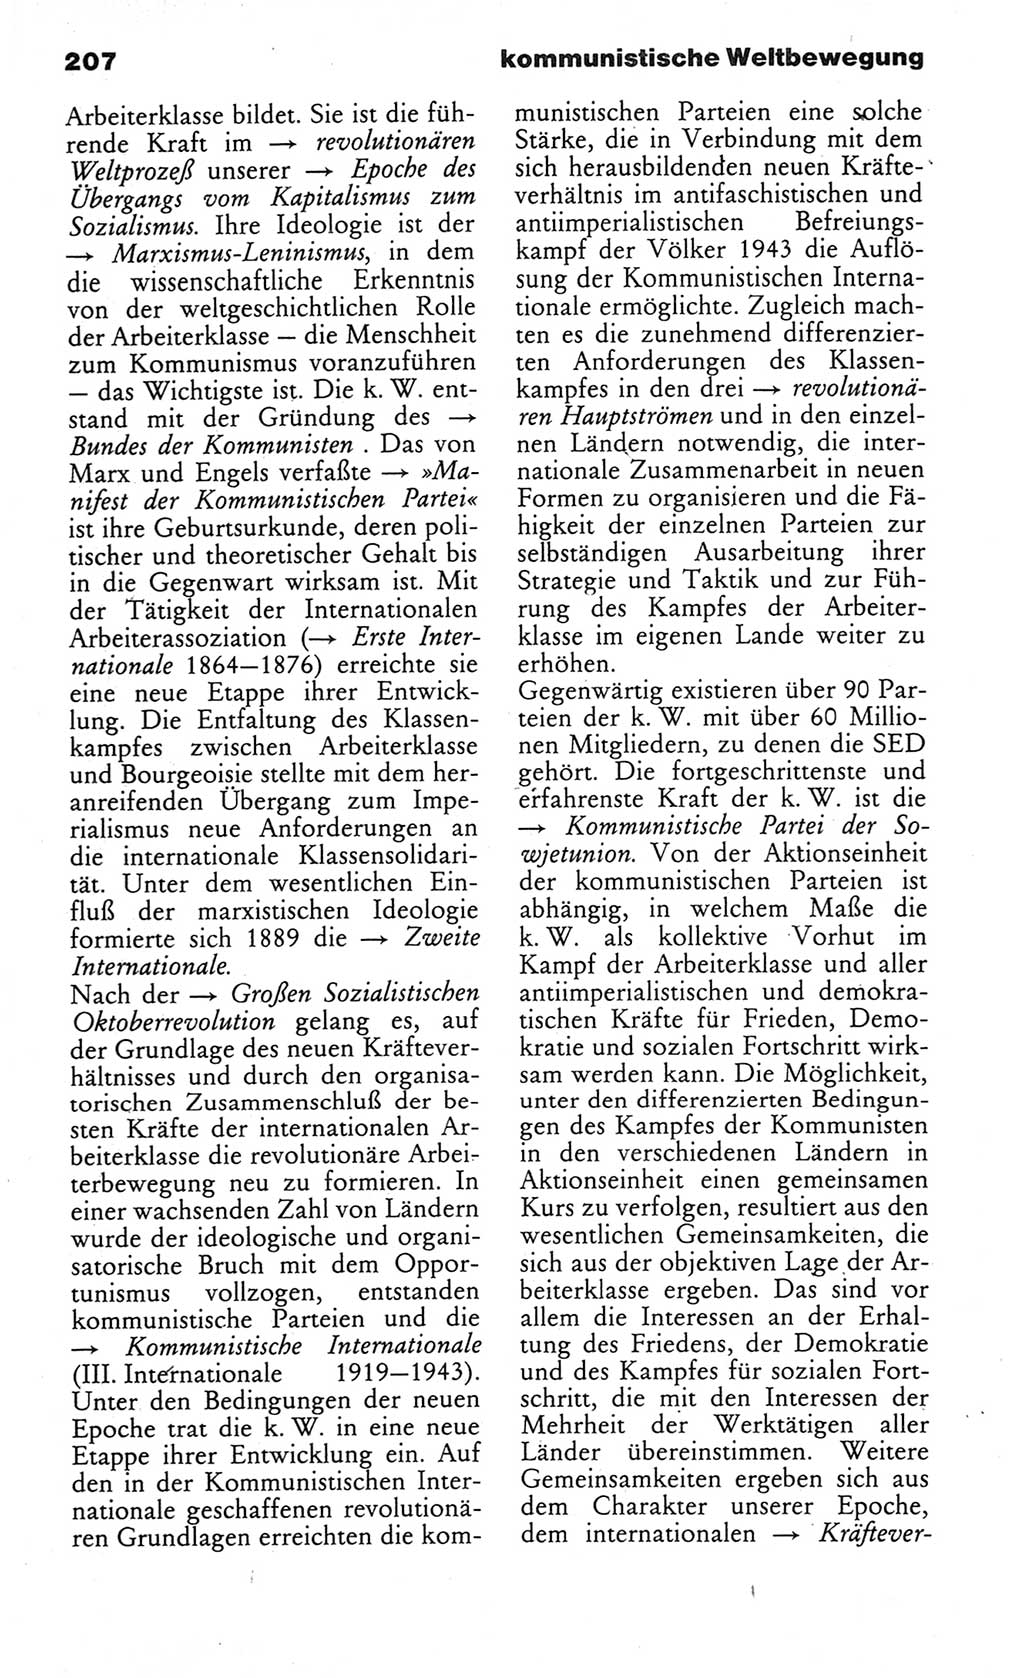 Wörterbuch des wissenschaftlichen Kommunismus [Deutsche Demokratische Republik (DDR)] 1984, Seite 207 (Wb. wiss. Komm. DDR 1984, S. 207)